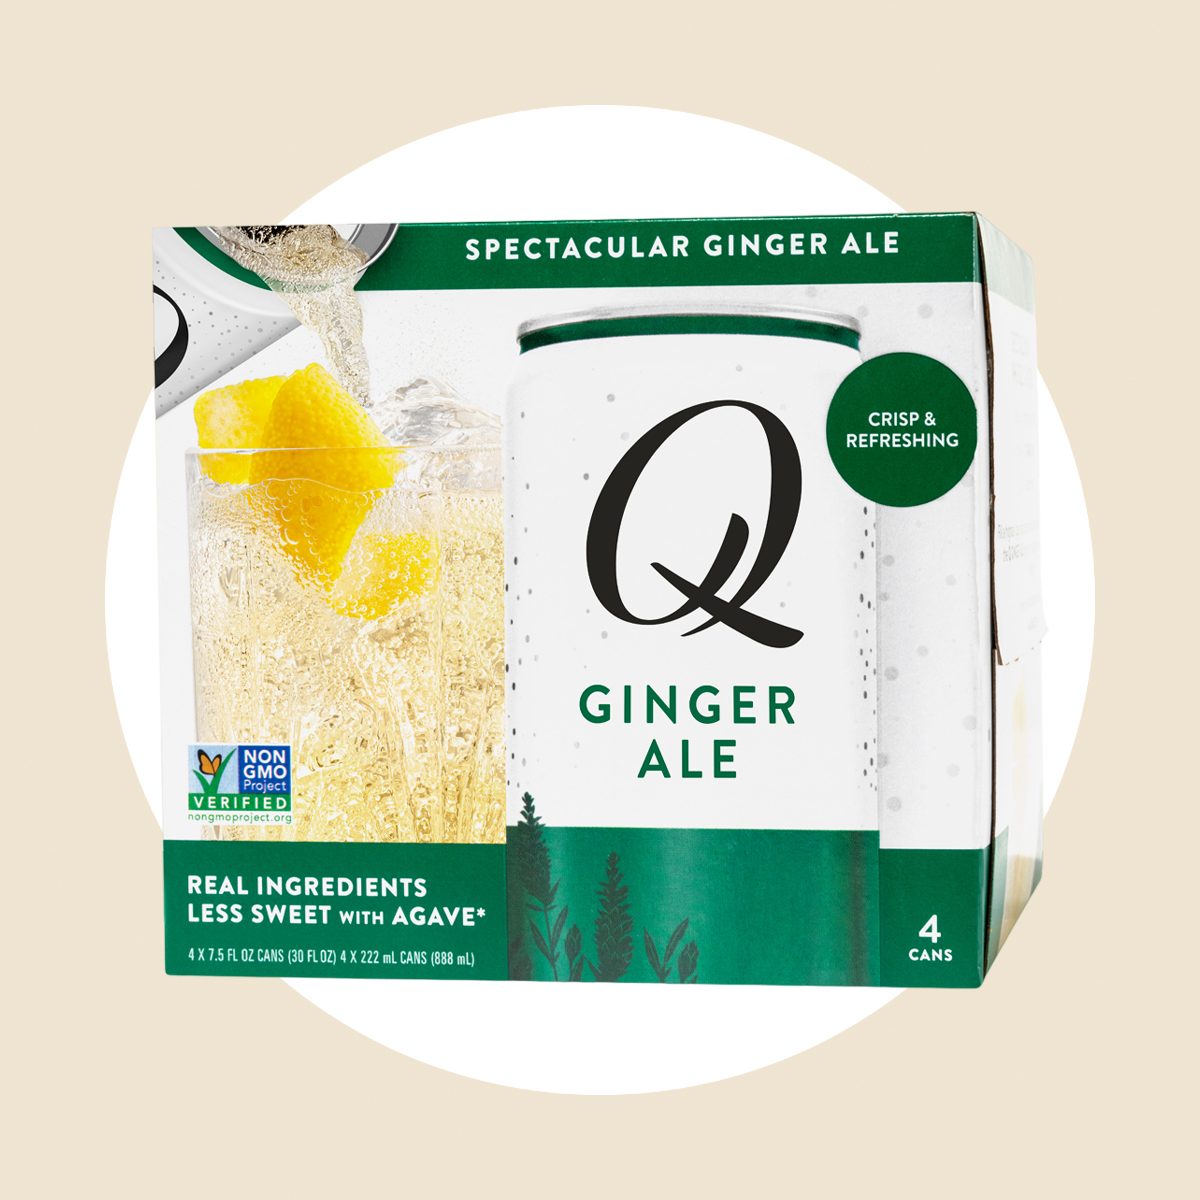 Q Mixers Ginger Ale Ecomm Via Thrivemarket.com